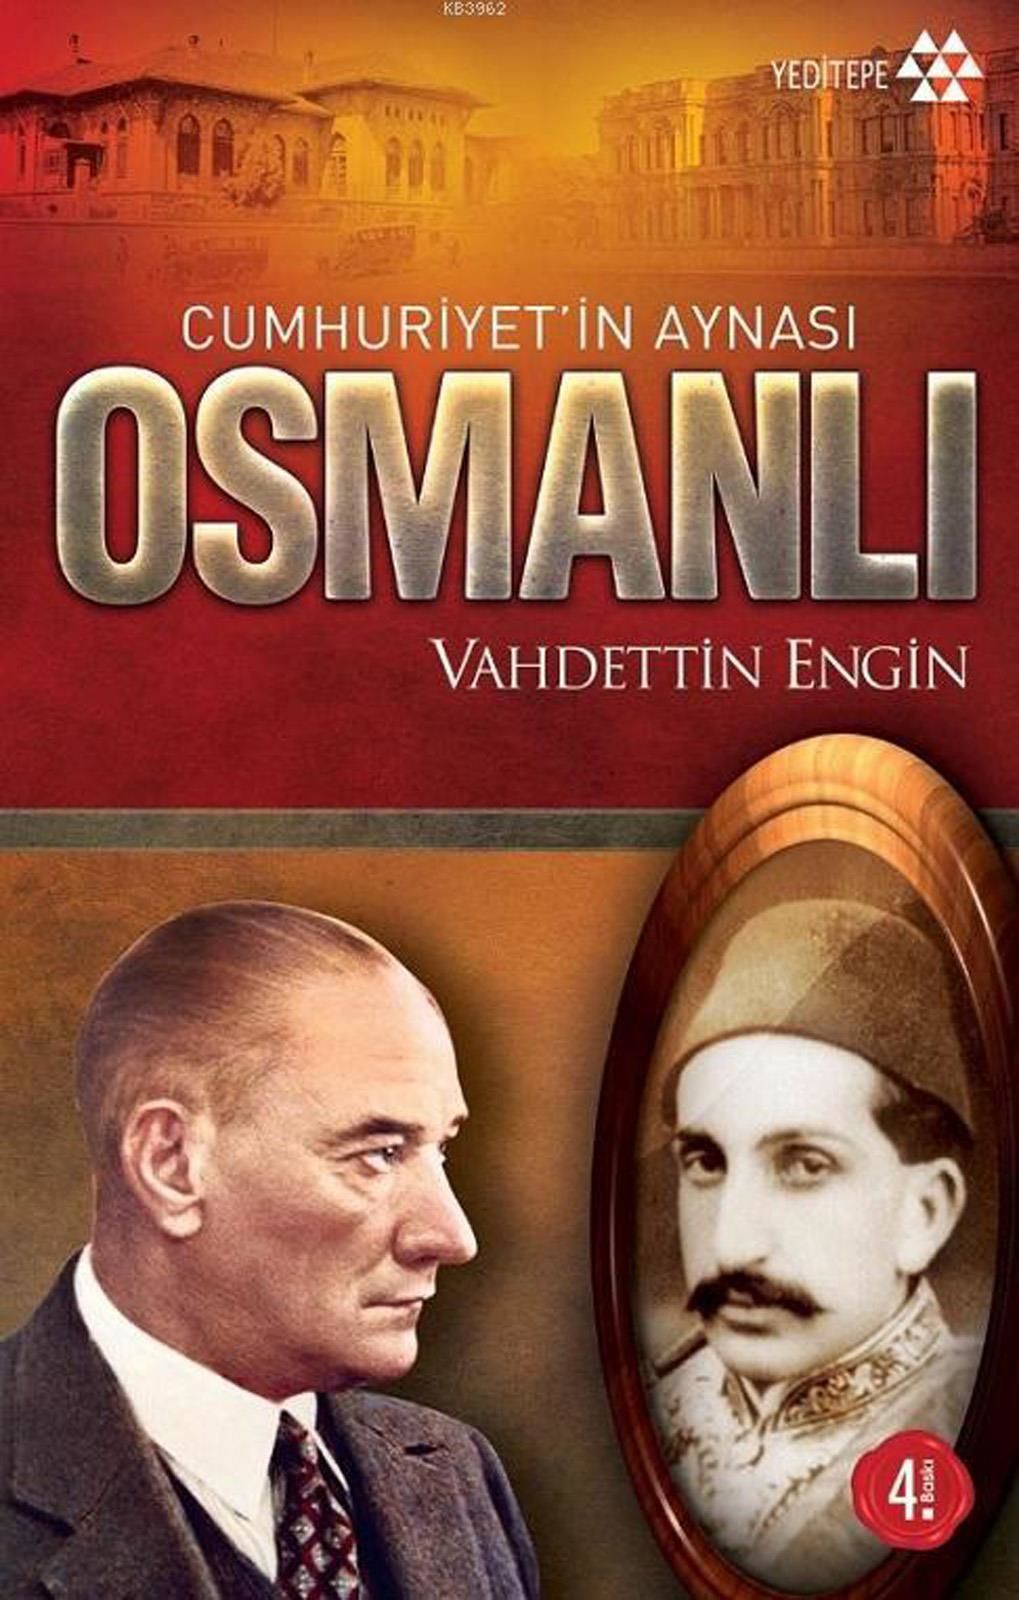 Cumhuriyet in Aynası Osmanlı